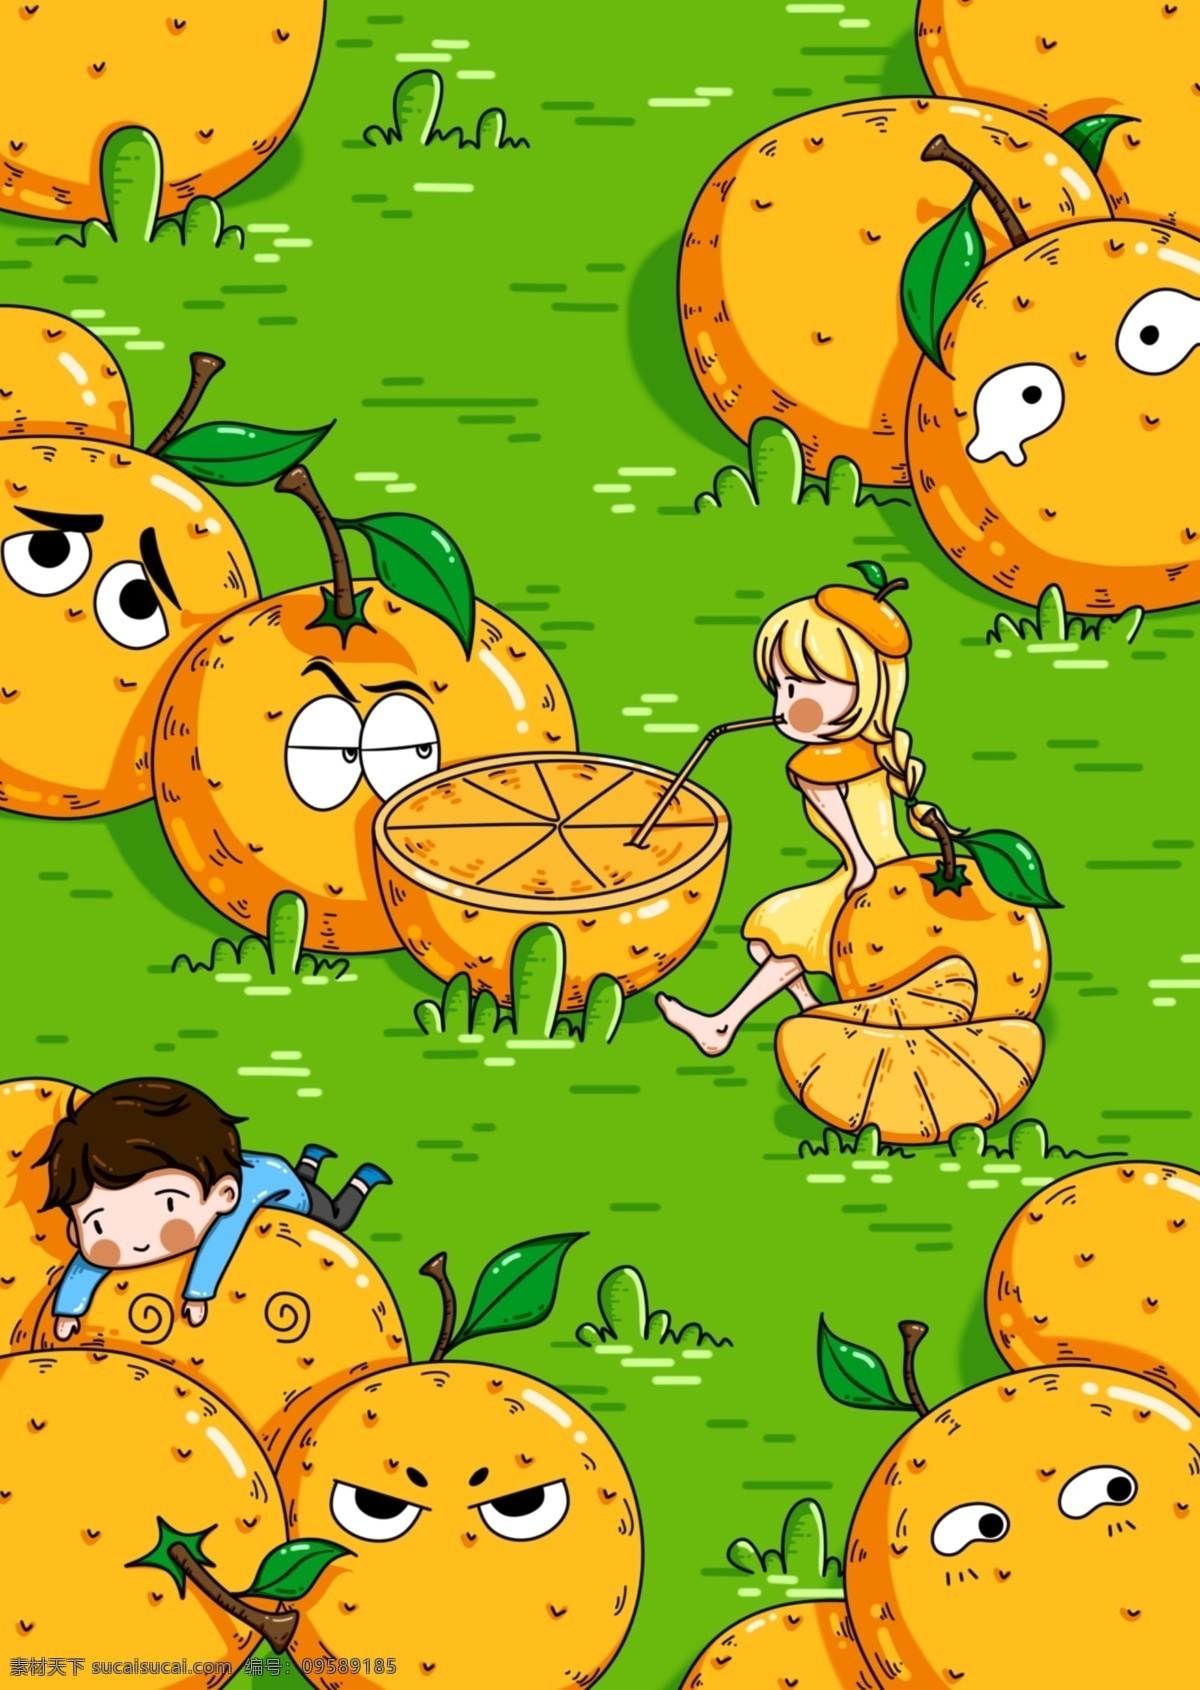 童年 幻想 橙子 怪 小孩 原创 插画 手绘 流行趋势 橙色 草地 童年幻想 趋势 拟人 橙子怪